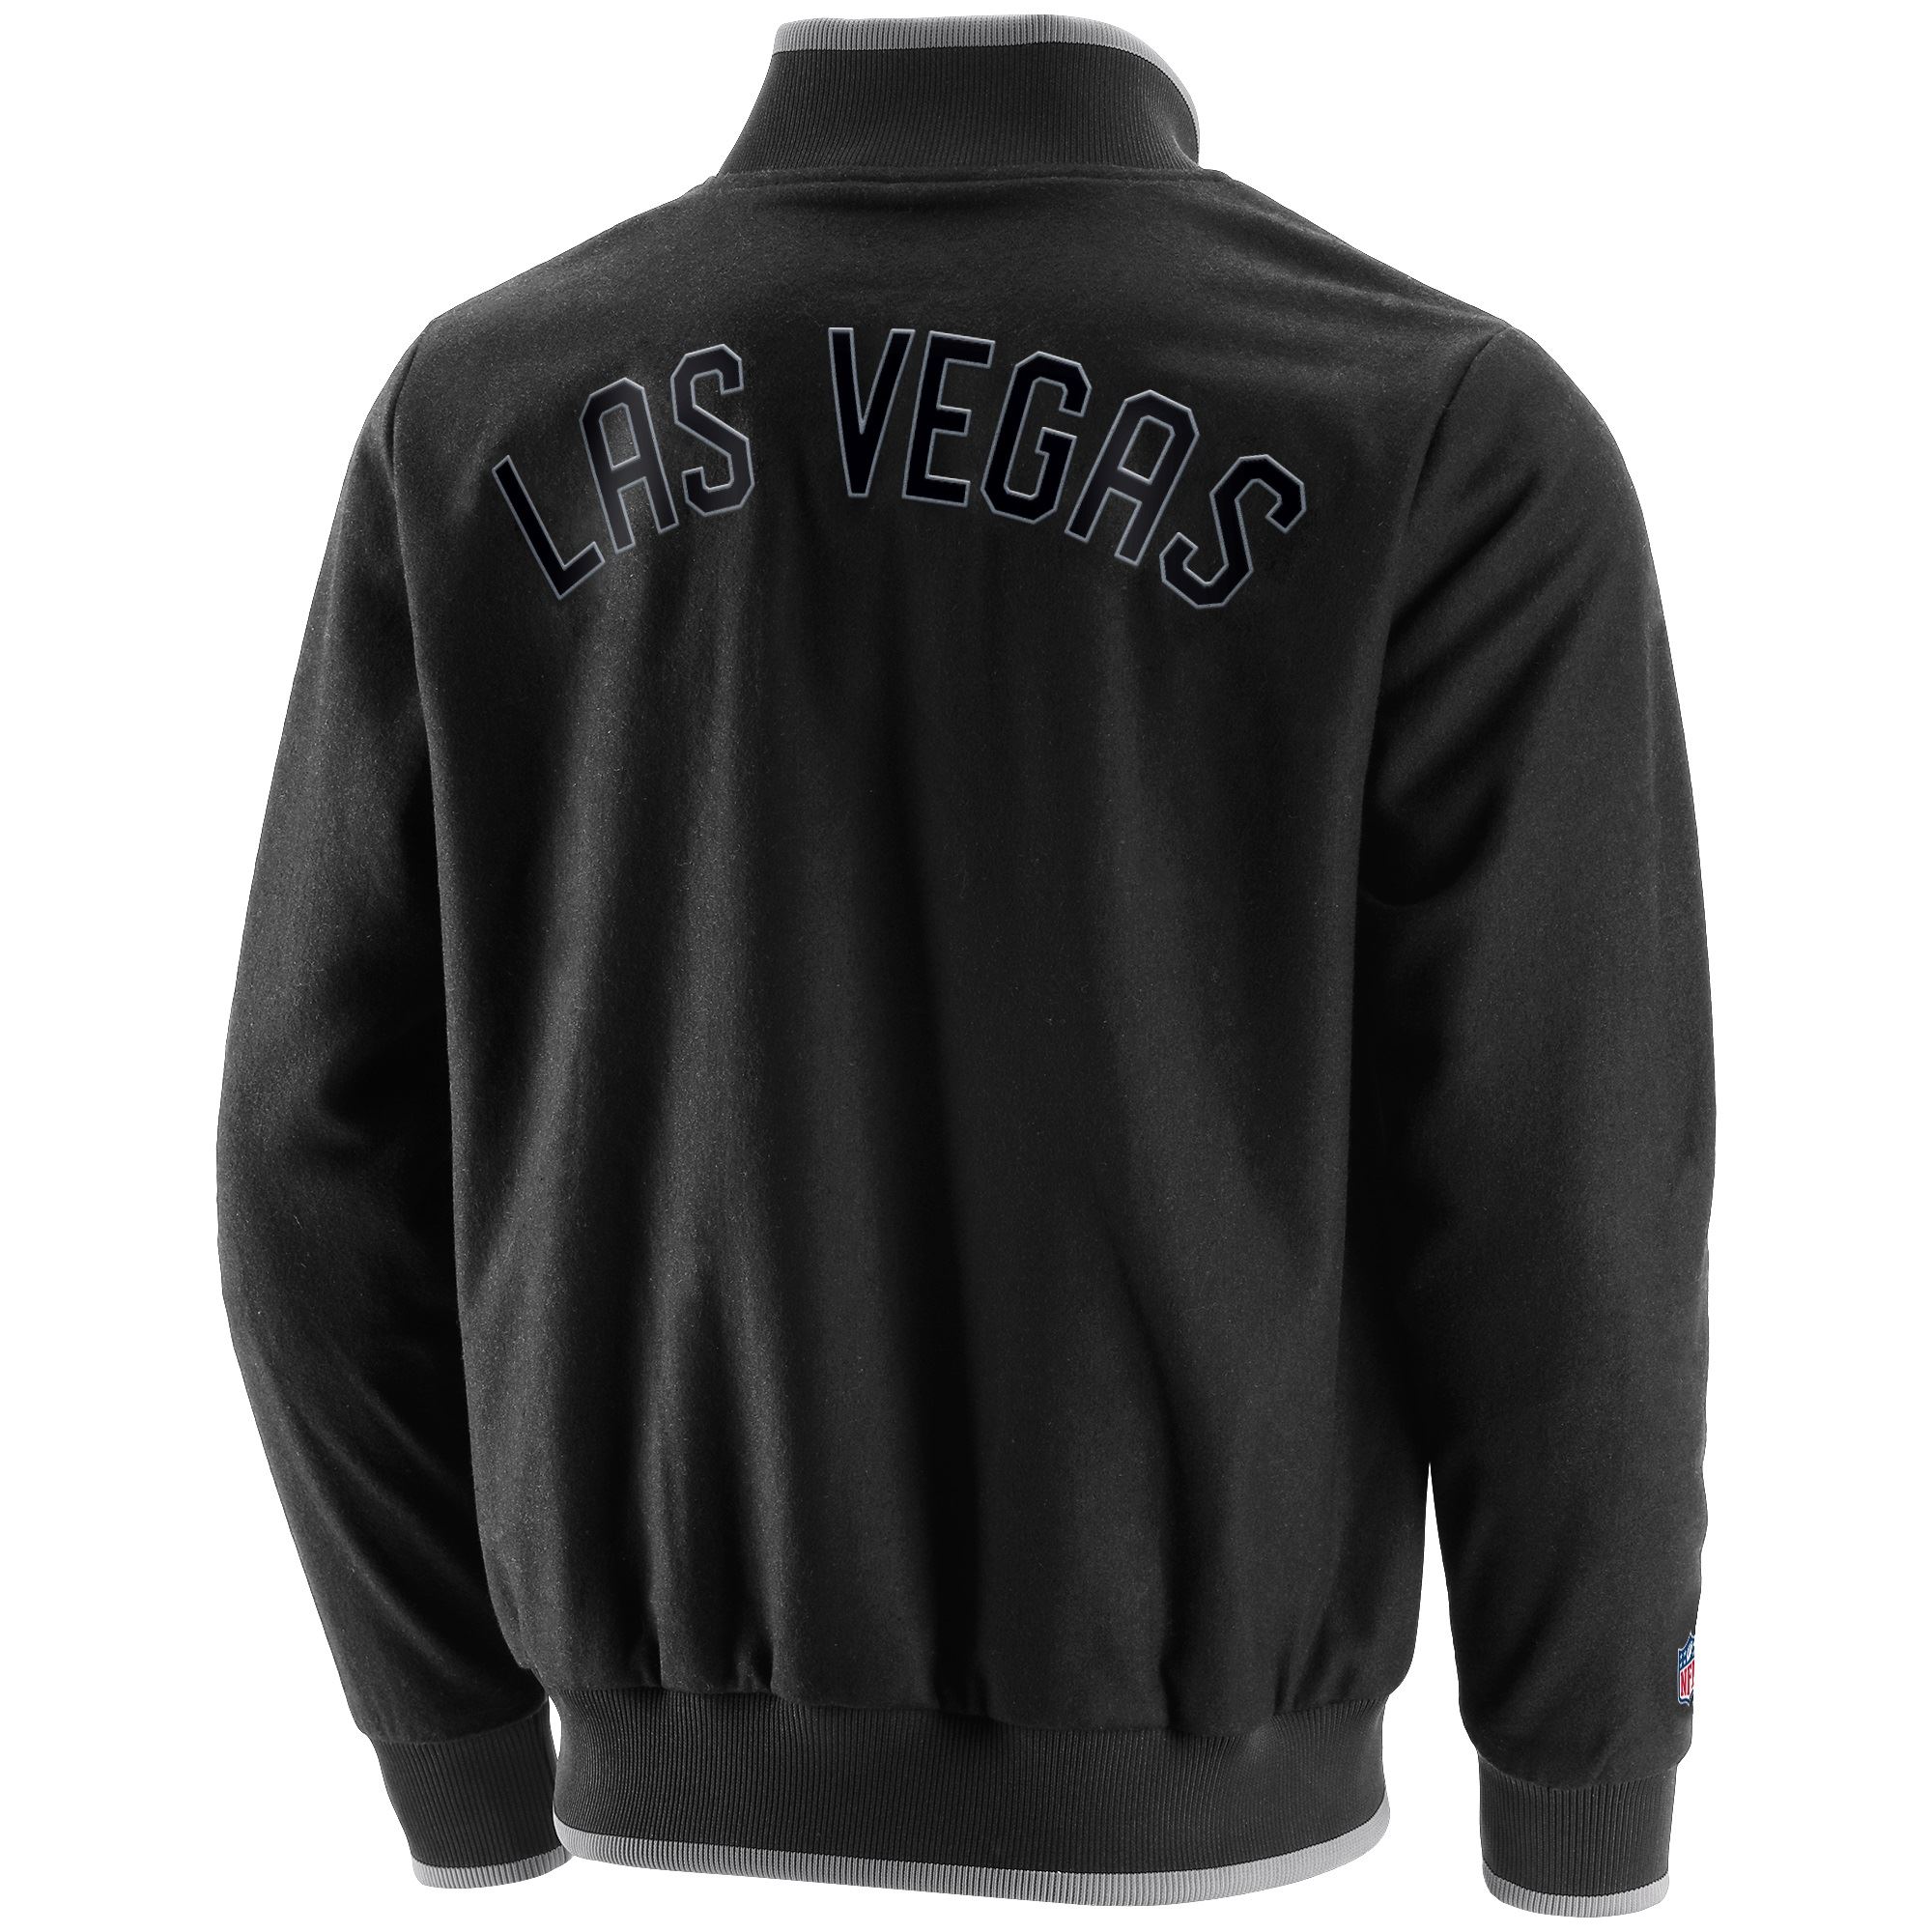 Las Vegas Raiders Black NFL Letterman Team Jacket Fanatics